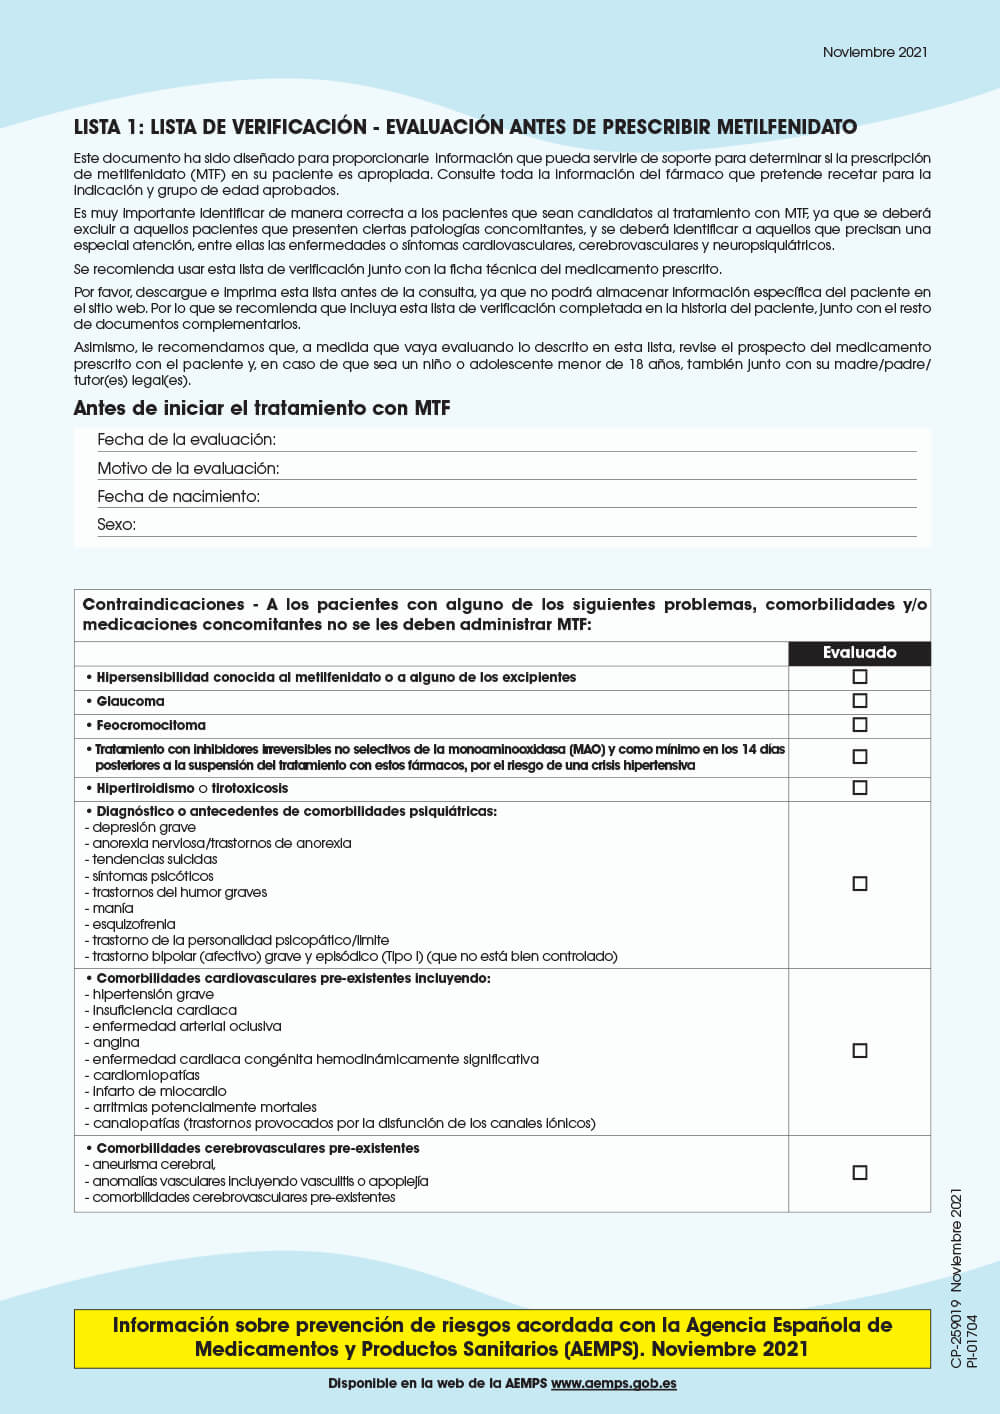 Vista preliminar: Lista 1: Lista de control antes de recetar metilfenidato (MTF)